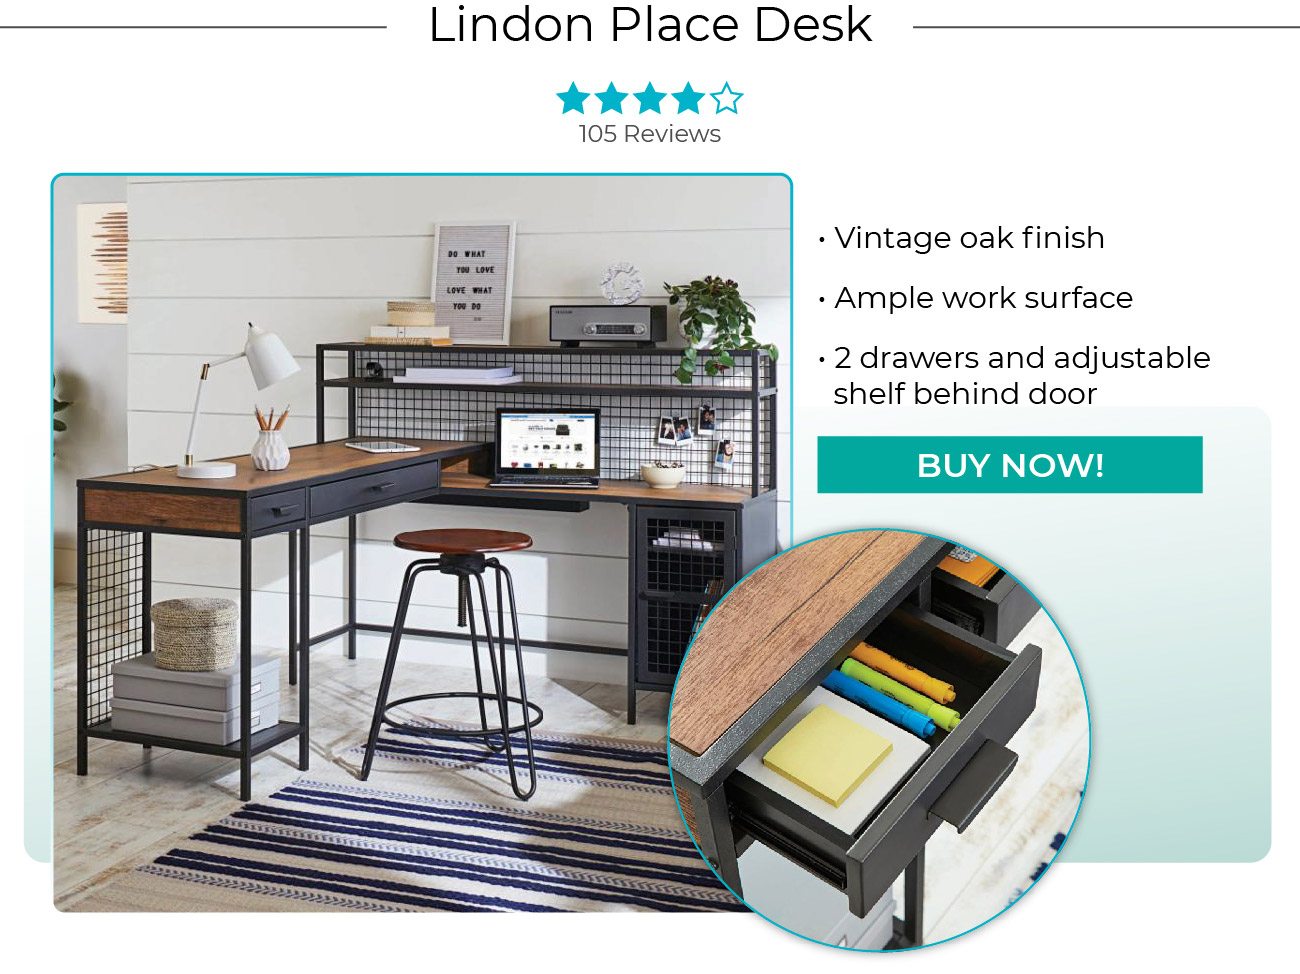 Lindon Place Desk